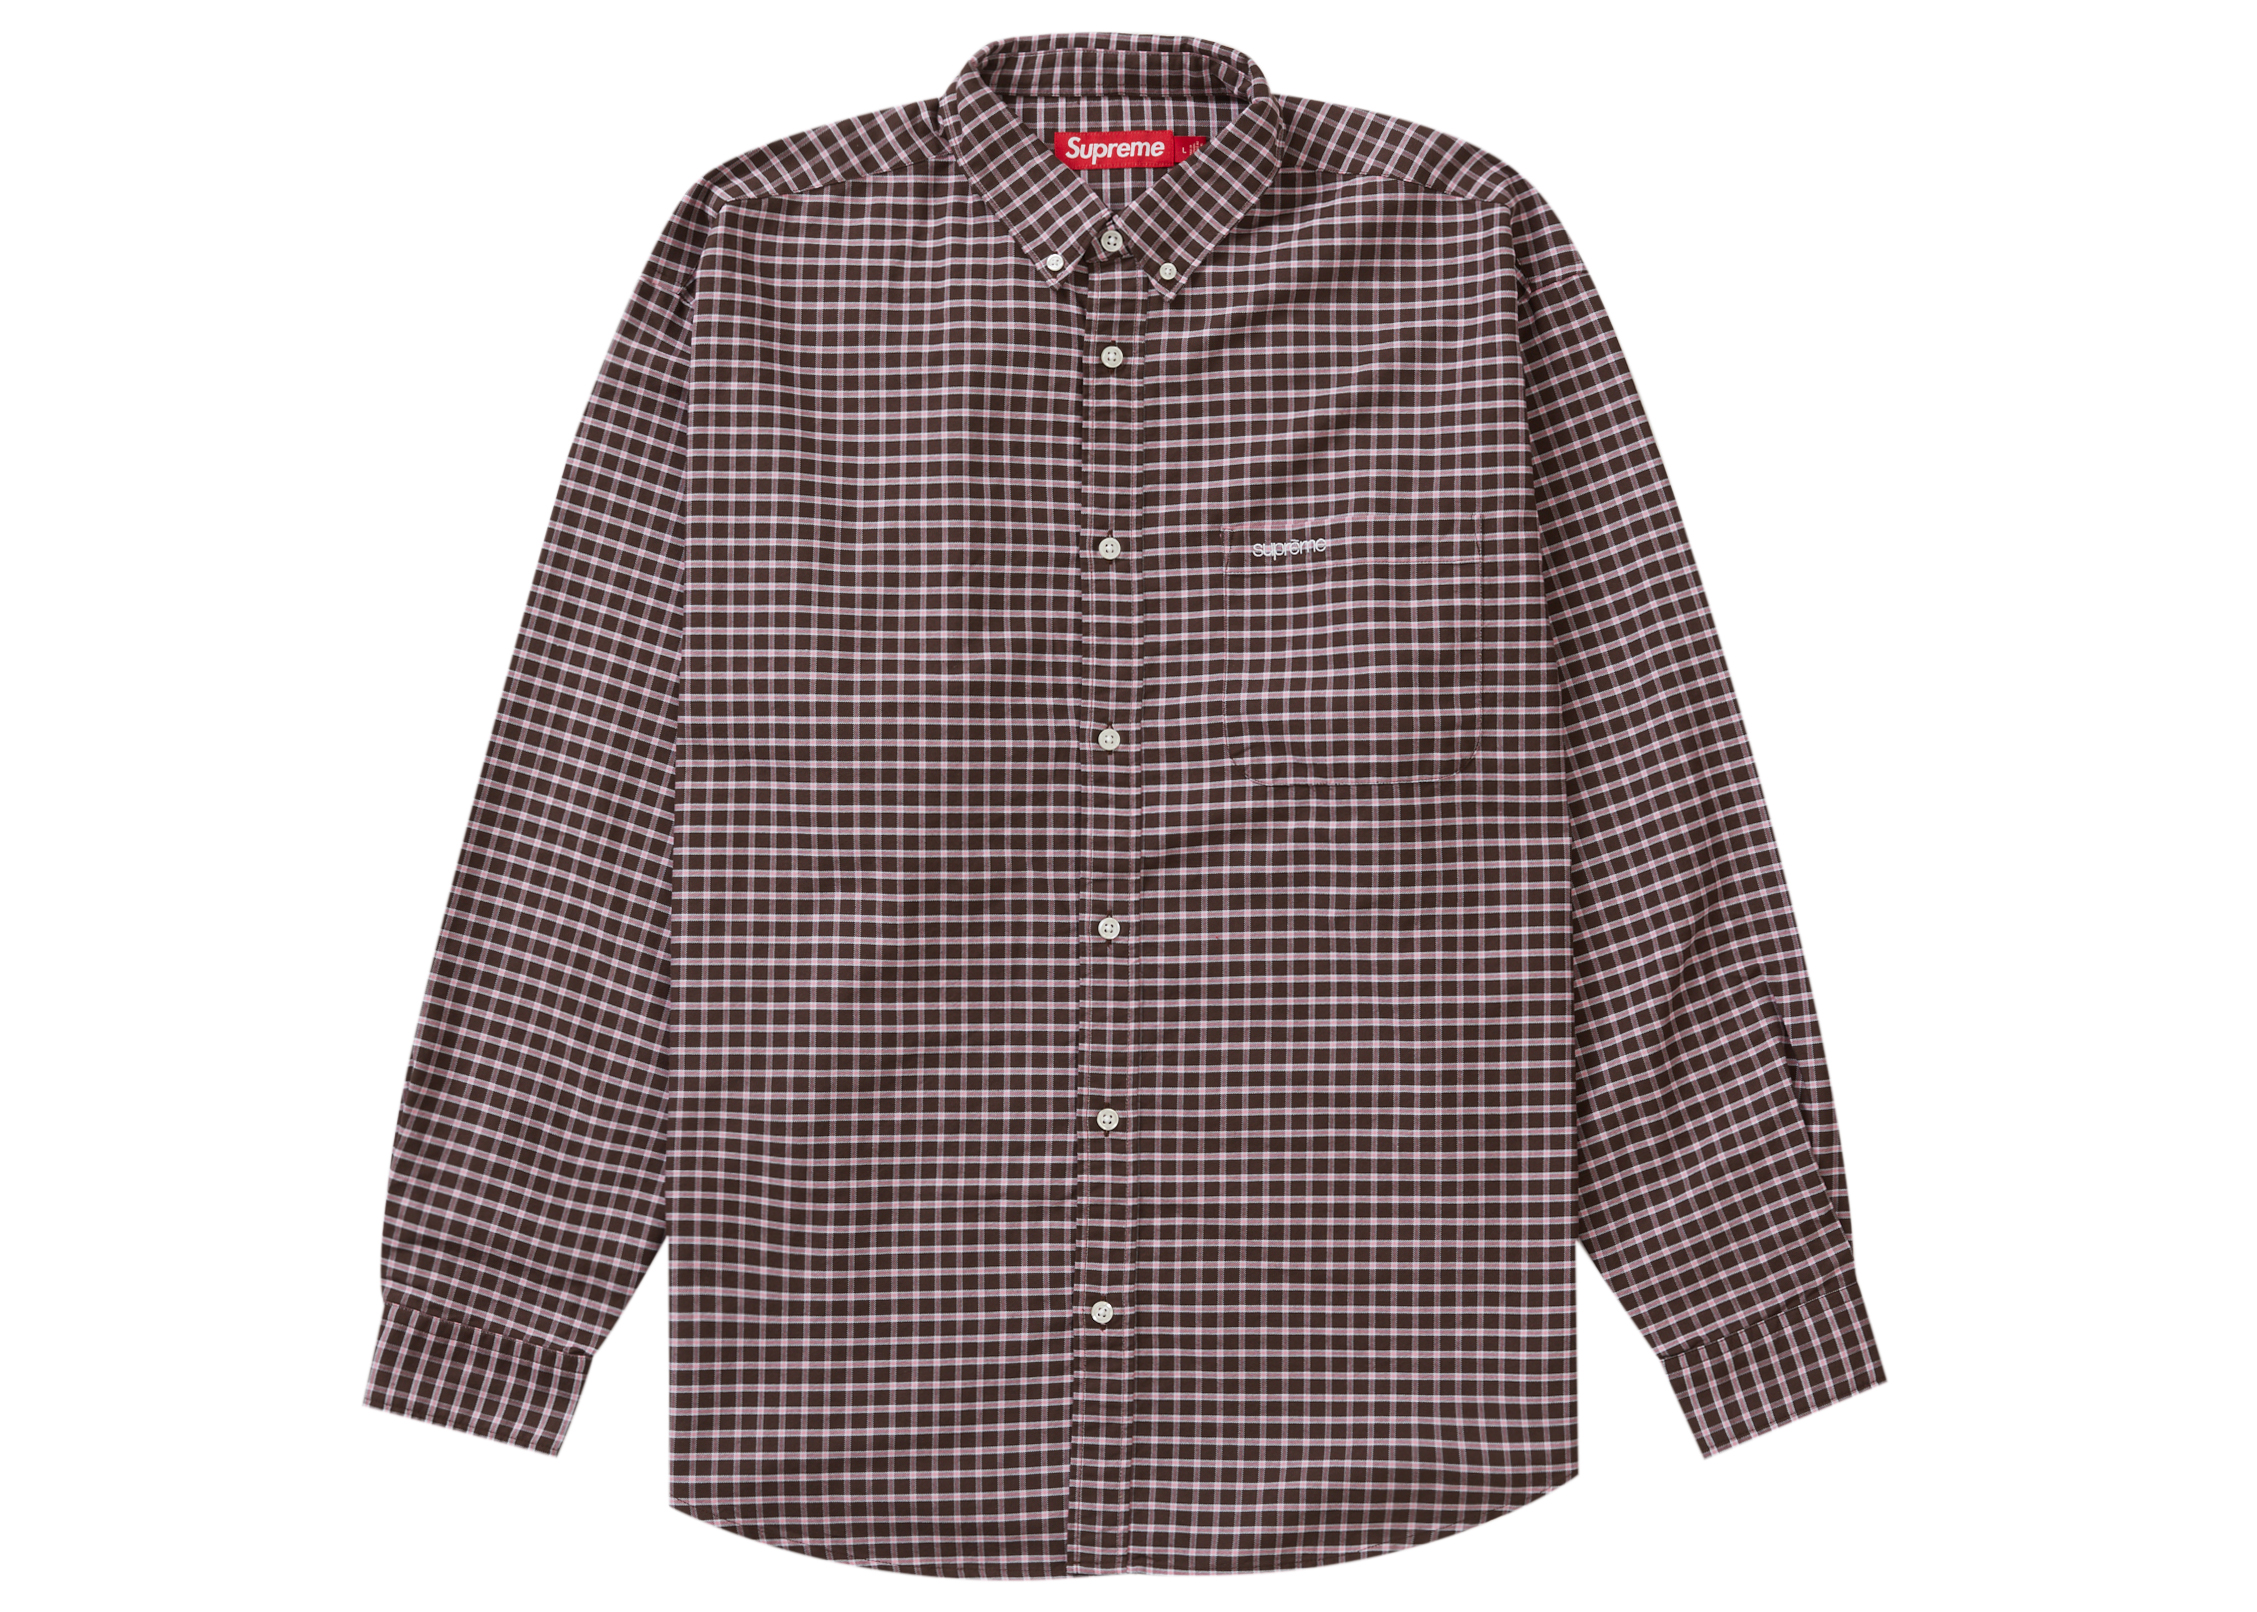 Supreme Loose Fit Oxford Shirt Brown Plaid メンズ - FW23 - JP